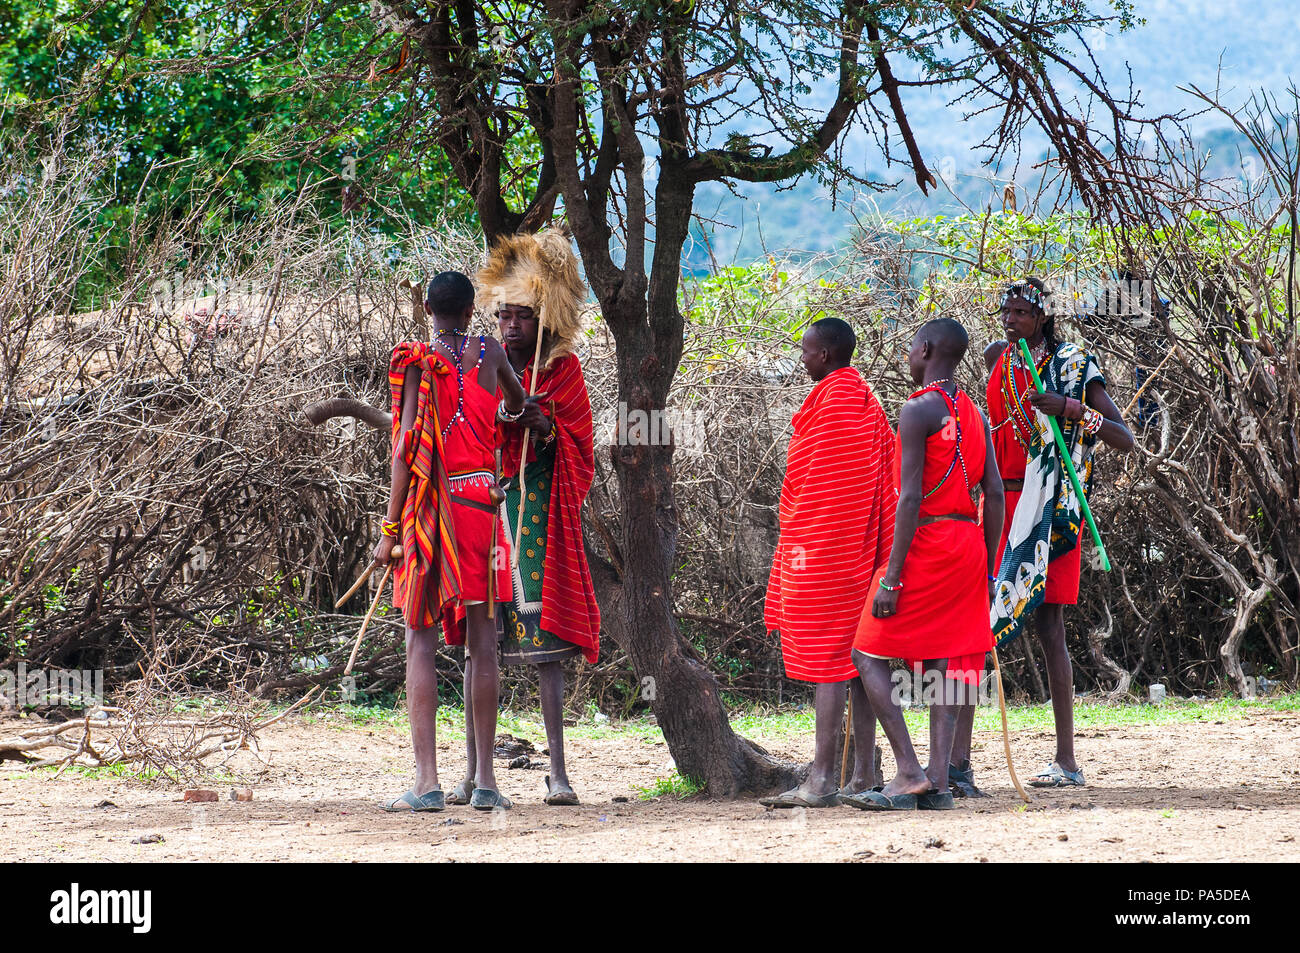 AMBOSELI, Kenia - Octubre 10, 2009: Massai personas no identificadas con palos de madera hablando de algo en Kenia, 10 Oct, 2009. Las personas son un Massai Foto de stock